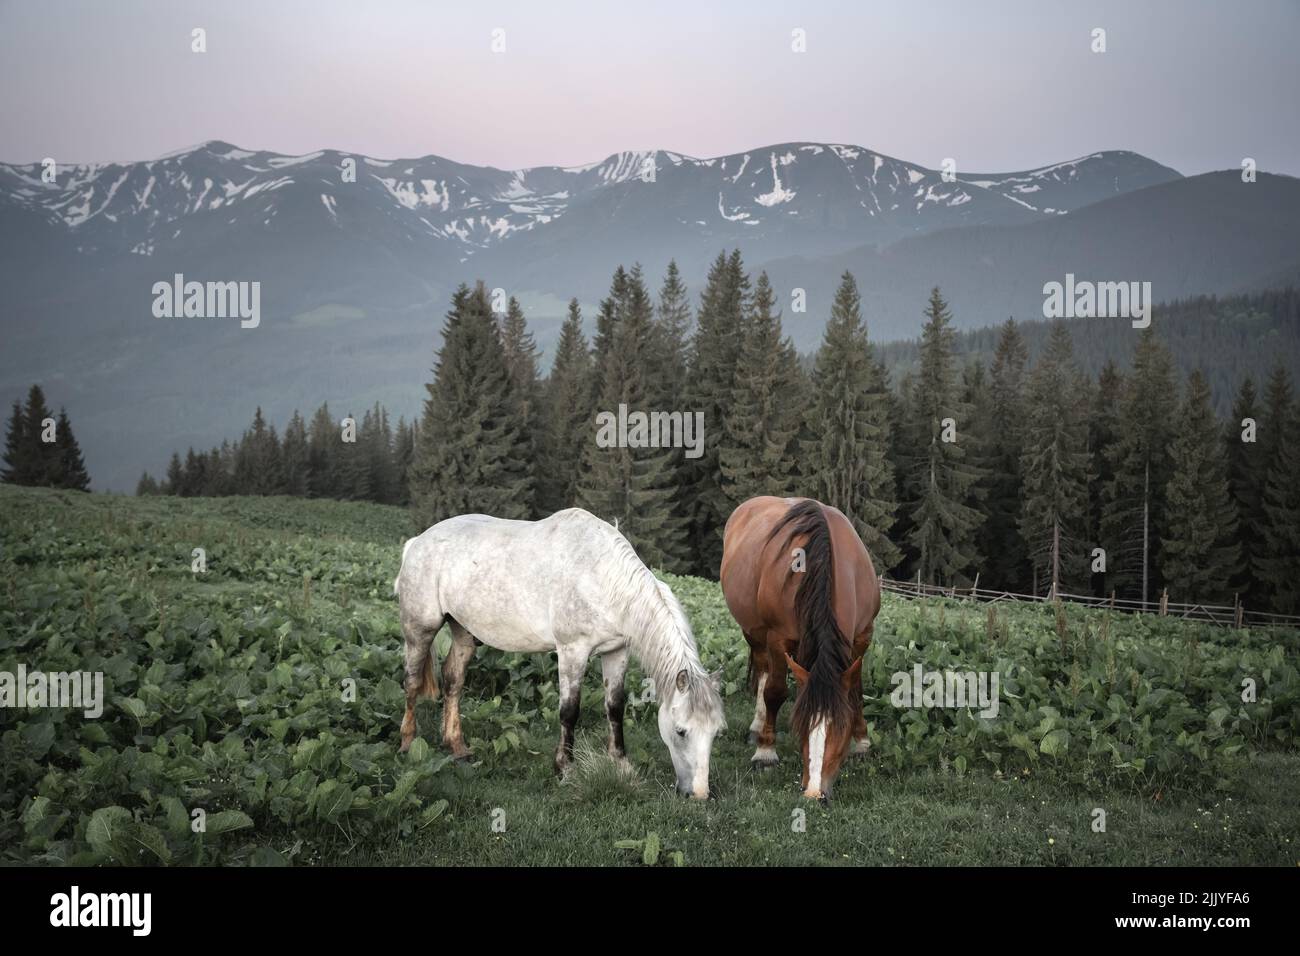 Par de caballos en pradera de primavera en el valle de las montañas. Fotografía de paisajes Foto de stock